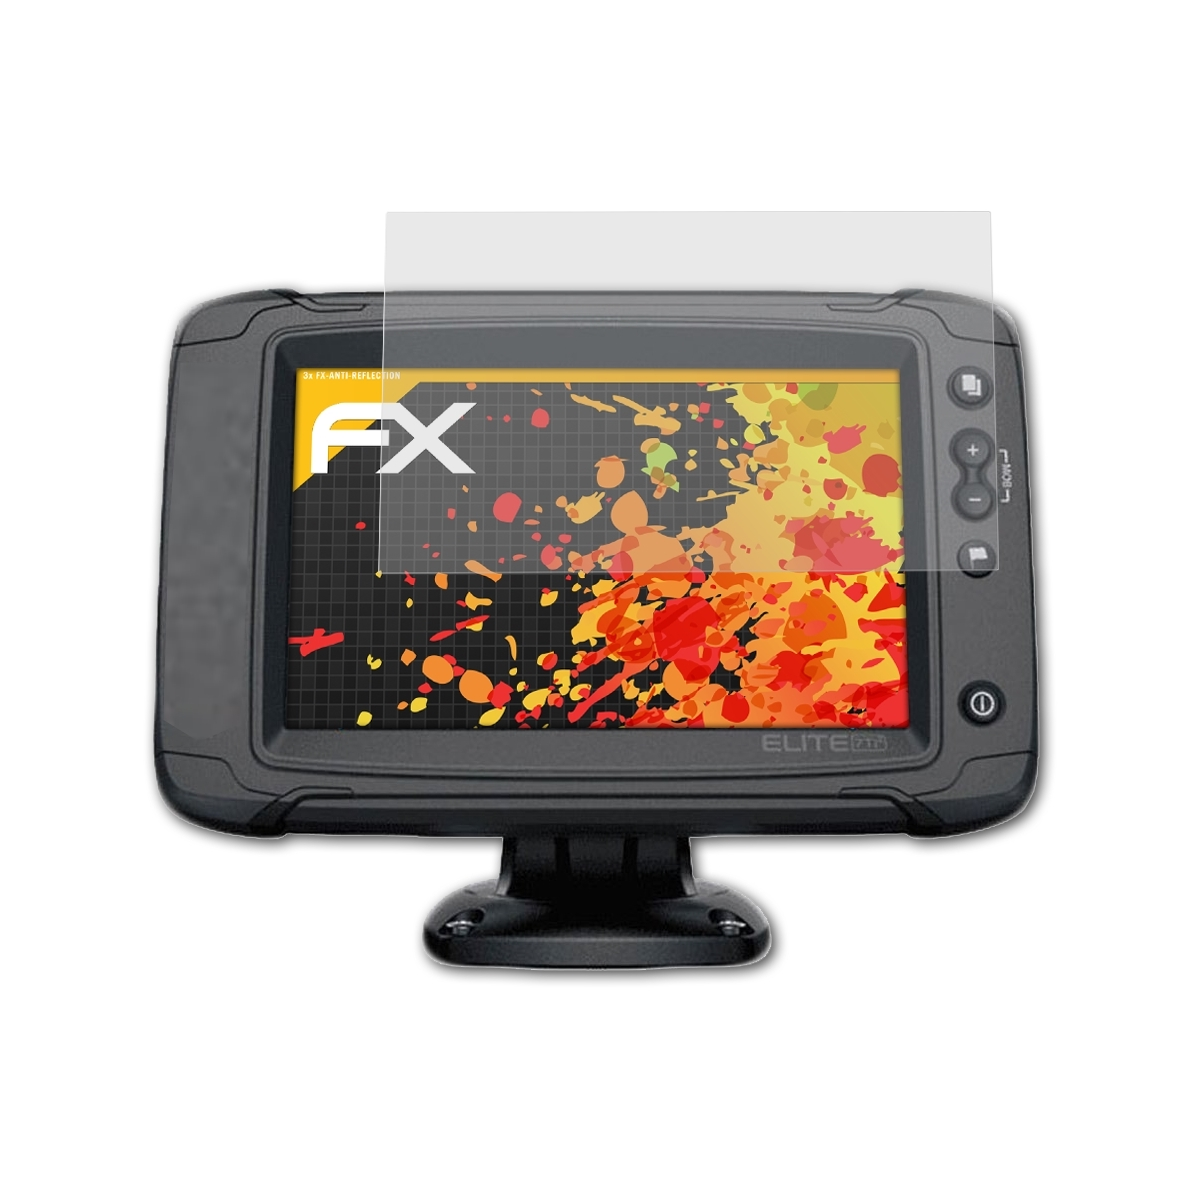 FX-Antireflex Ti2) 3x Displayschutz(für Lowrance ATFOLIX Elite-7